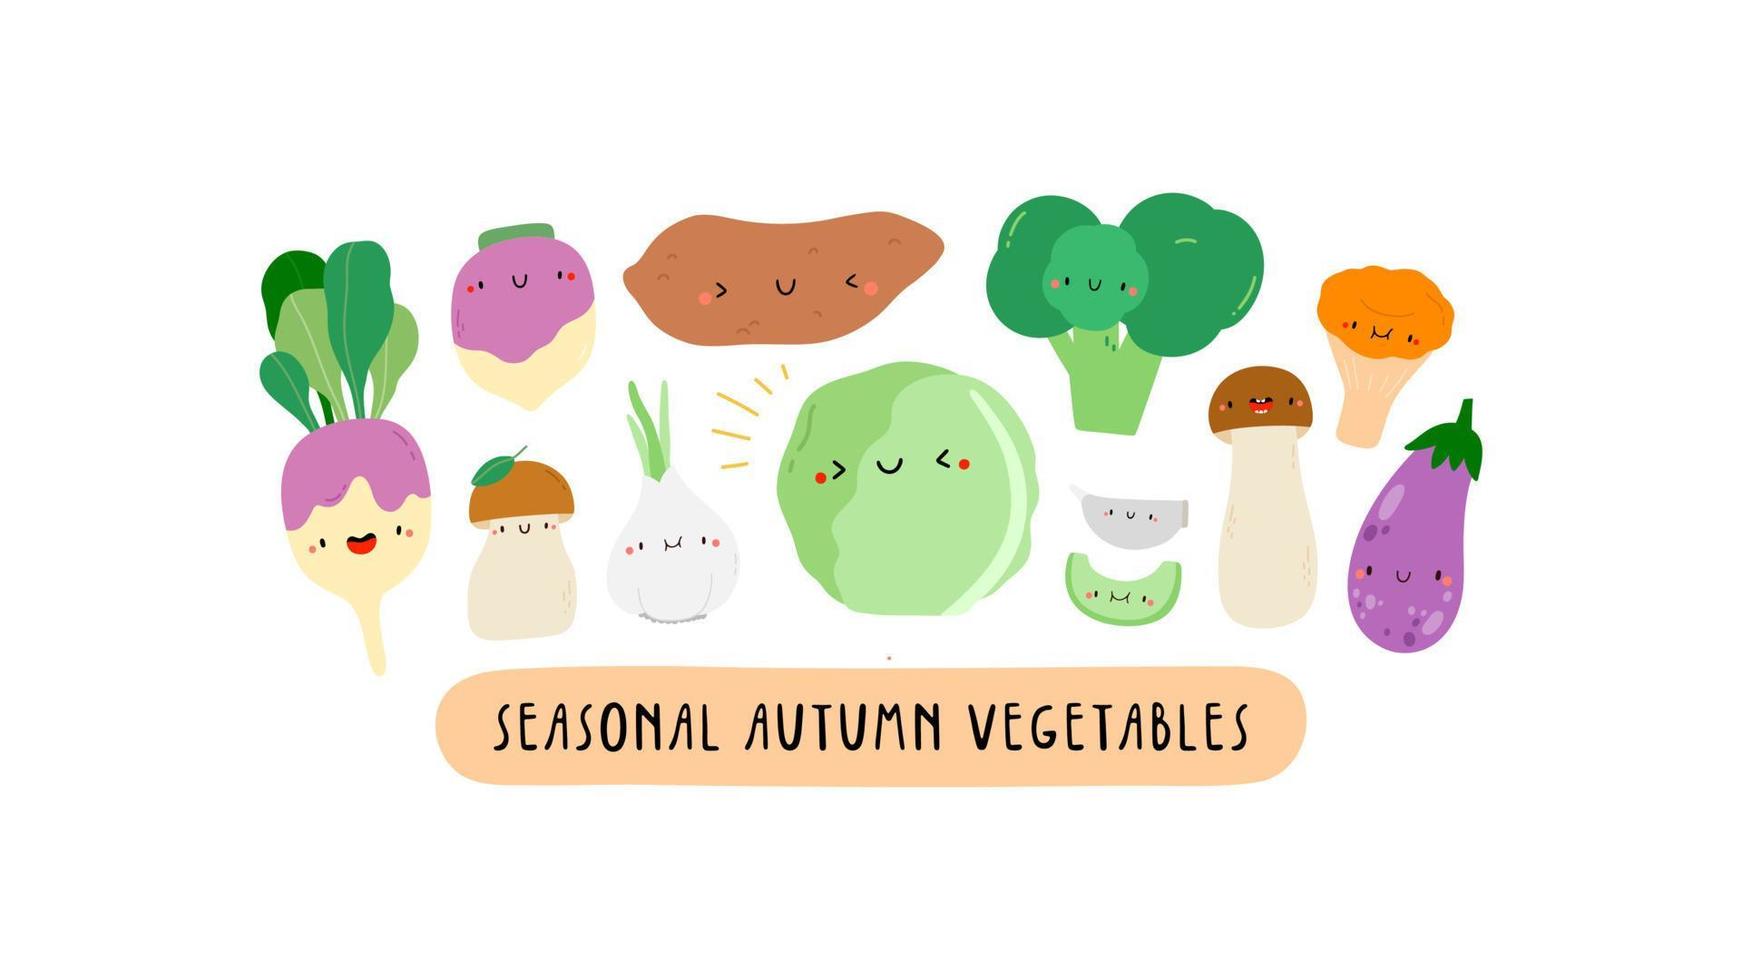 schattig illustratie met seizoensgebonden herfst groenten Aan een wit achtergrond. tekenfilm voedsel tekens - selderij, pompoen, raap, andijvie, kool, zoet aardappel, ei plant, knoflook. gezond groenten banier vector